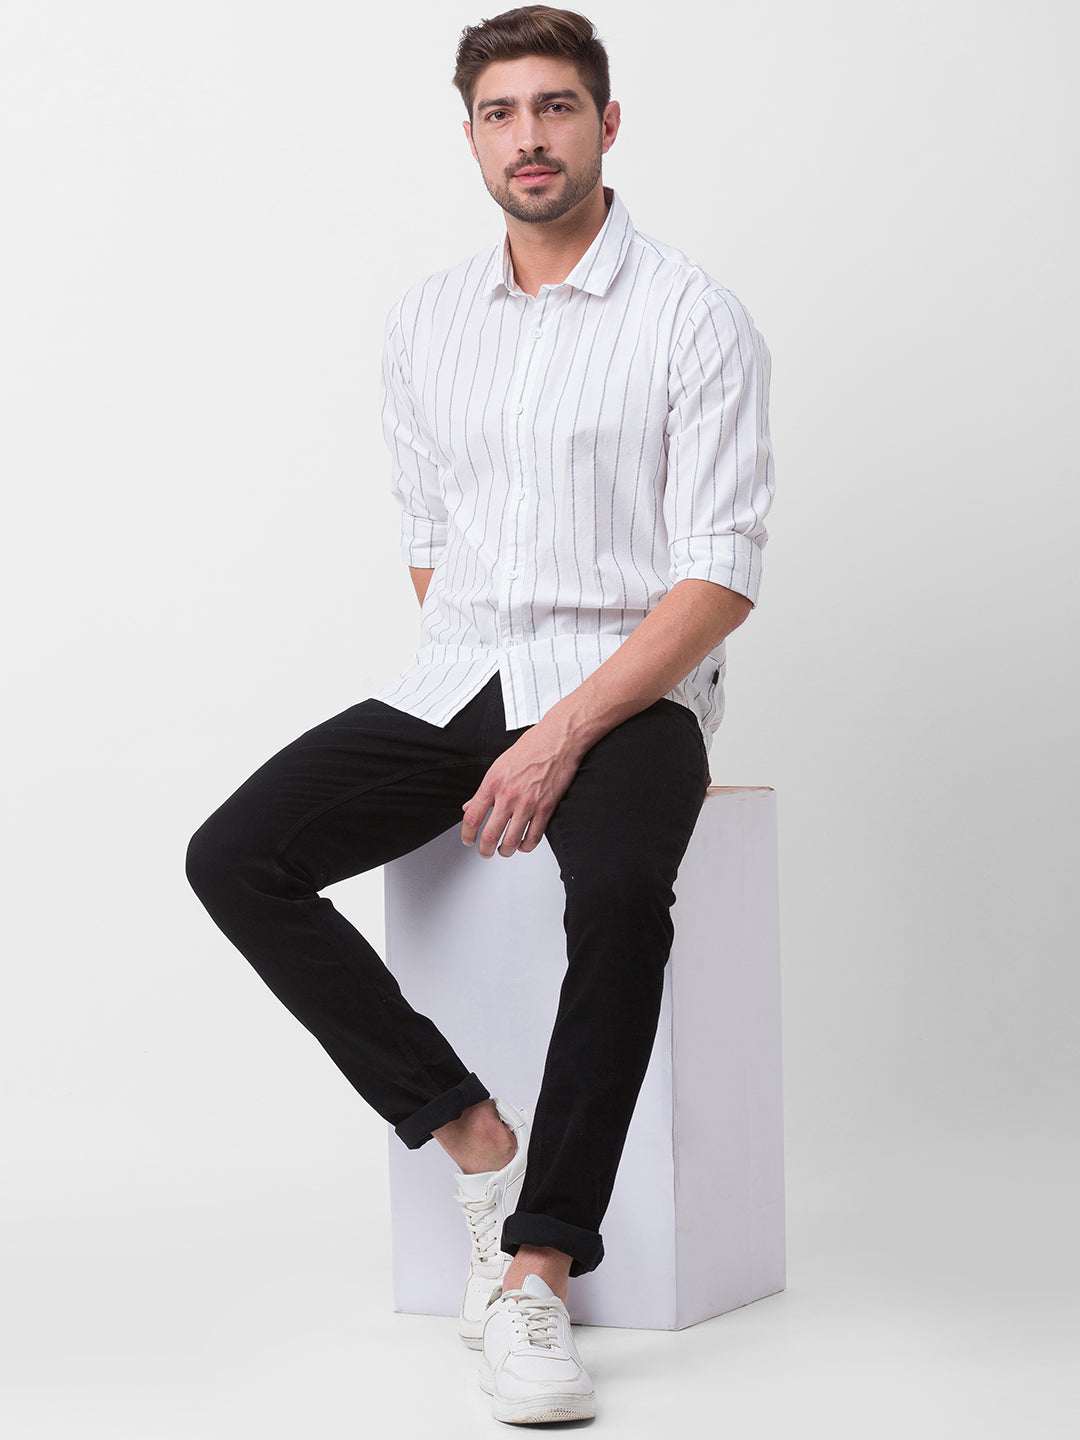 Spykar White Cotton Full Sleeve Stripes Shirt For Men